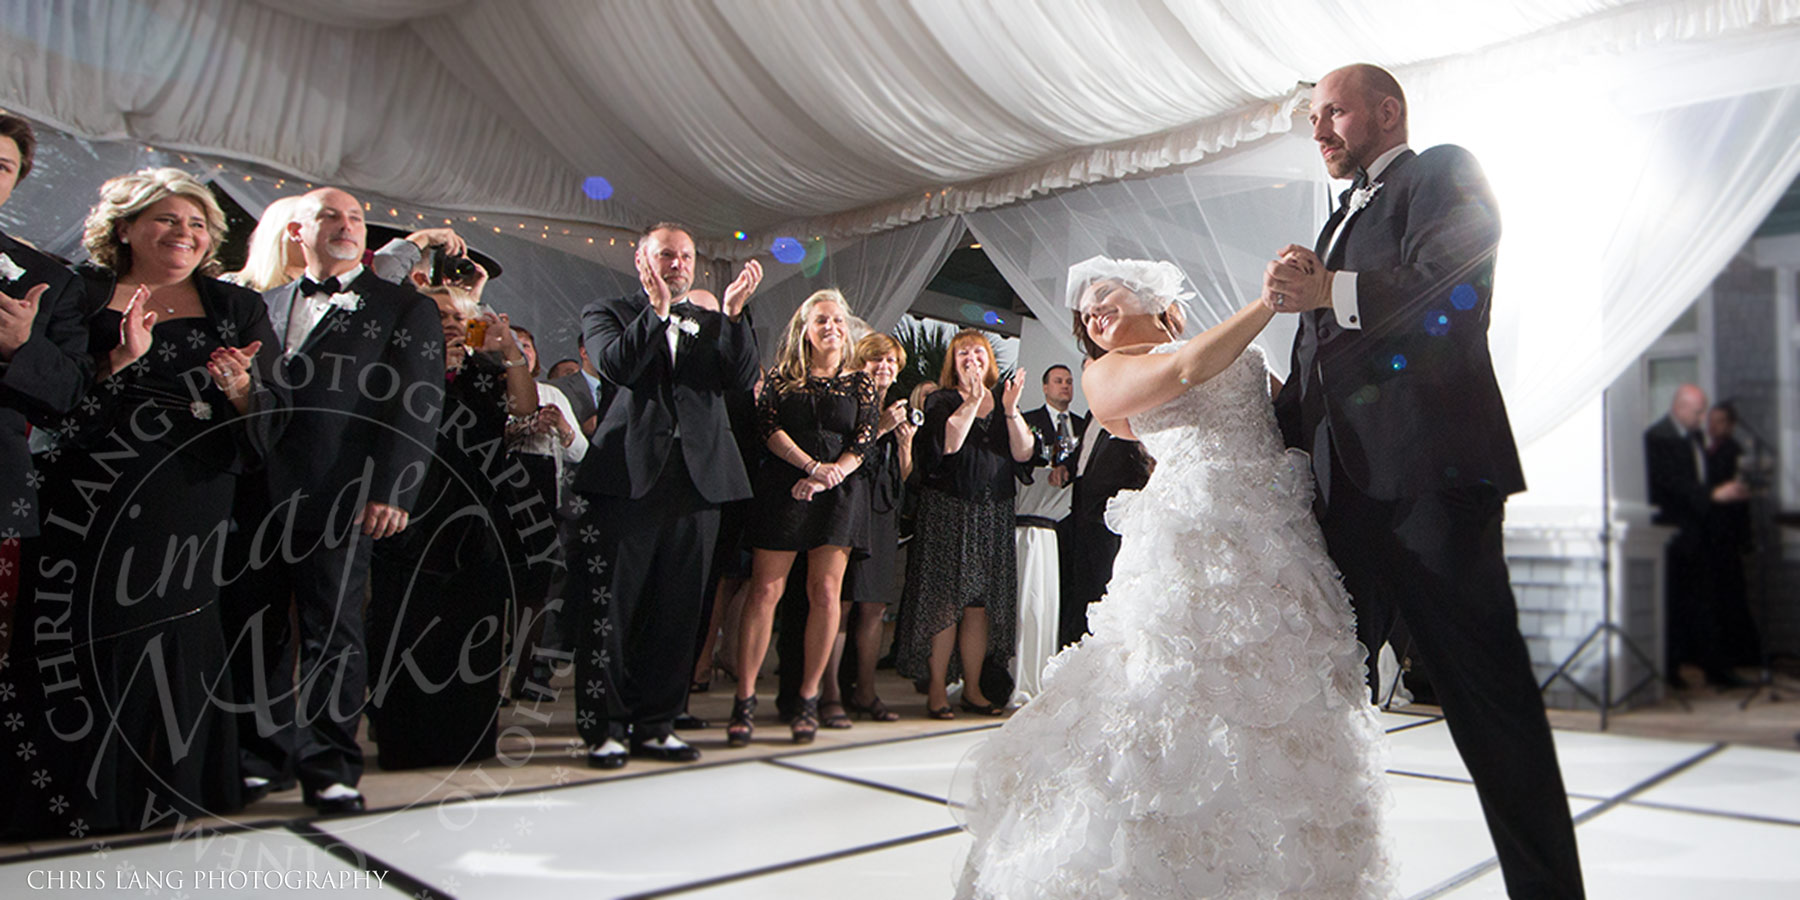 Bride & Groom first dance - Bald Head Island CLub - Wedding reception